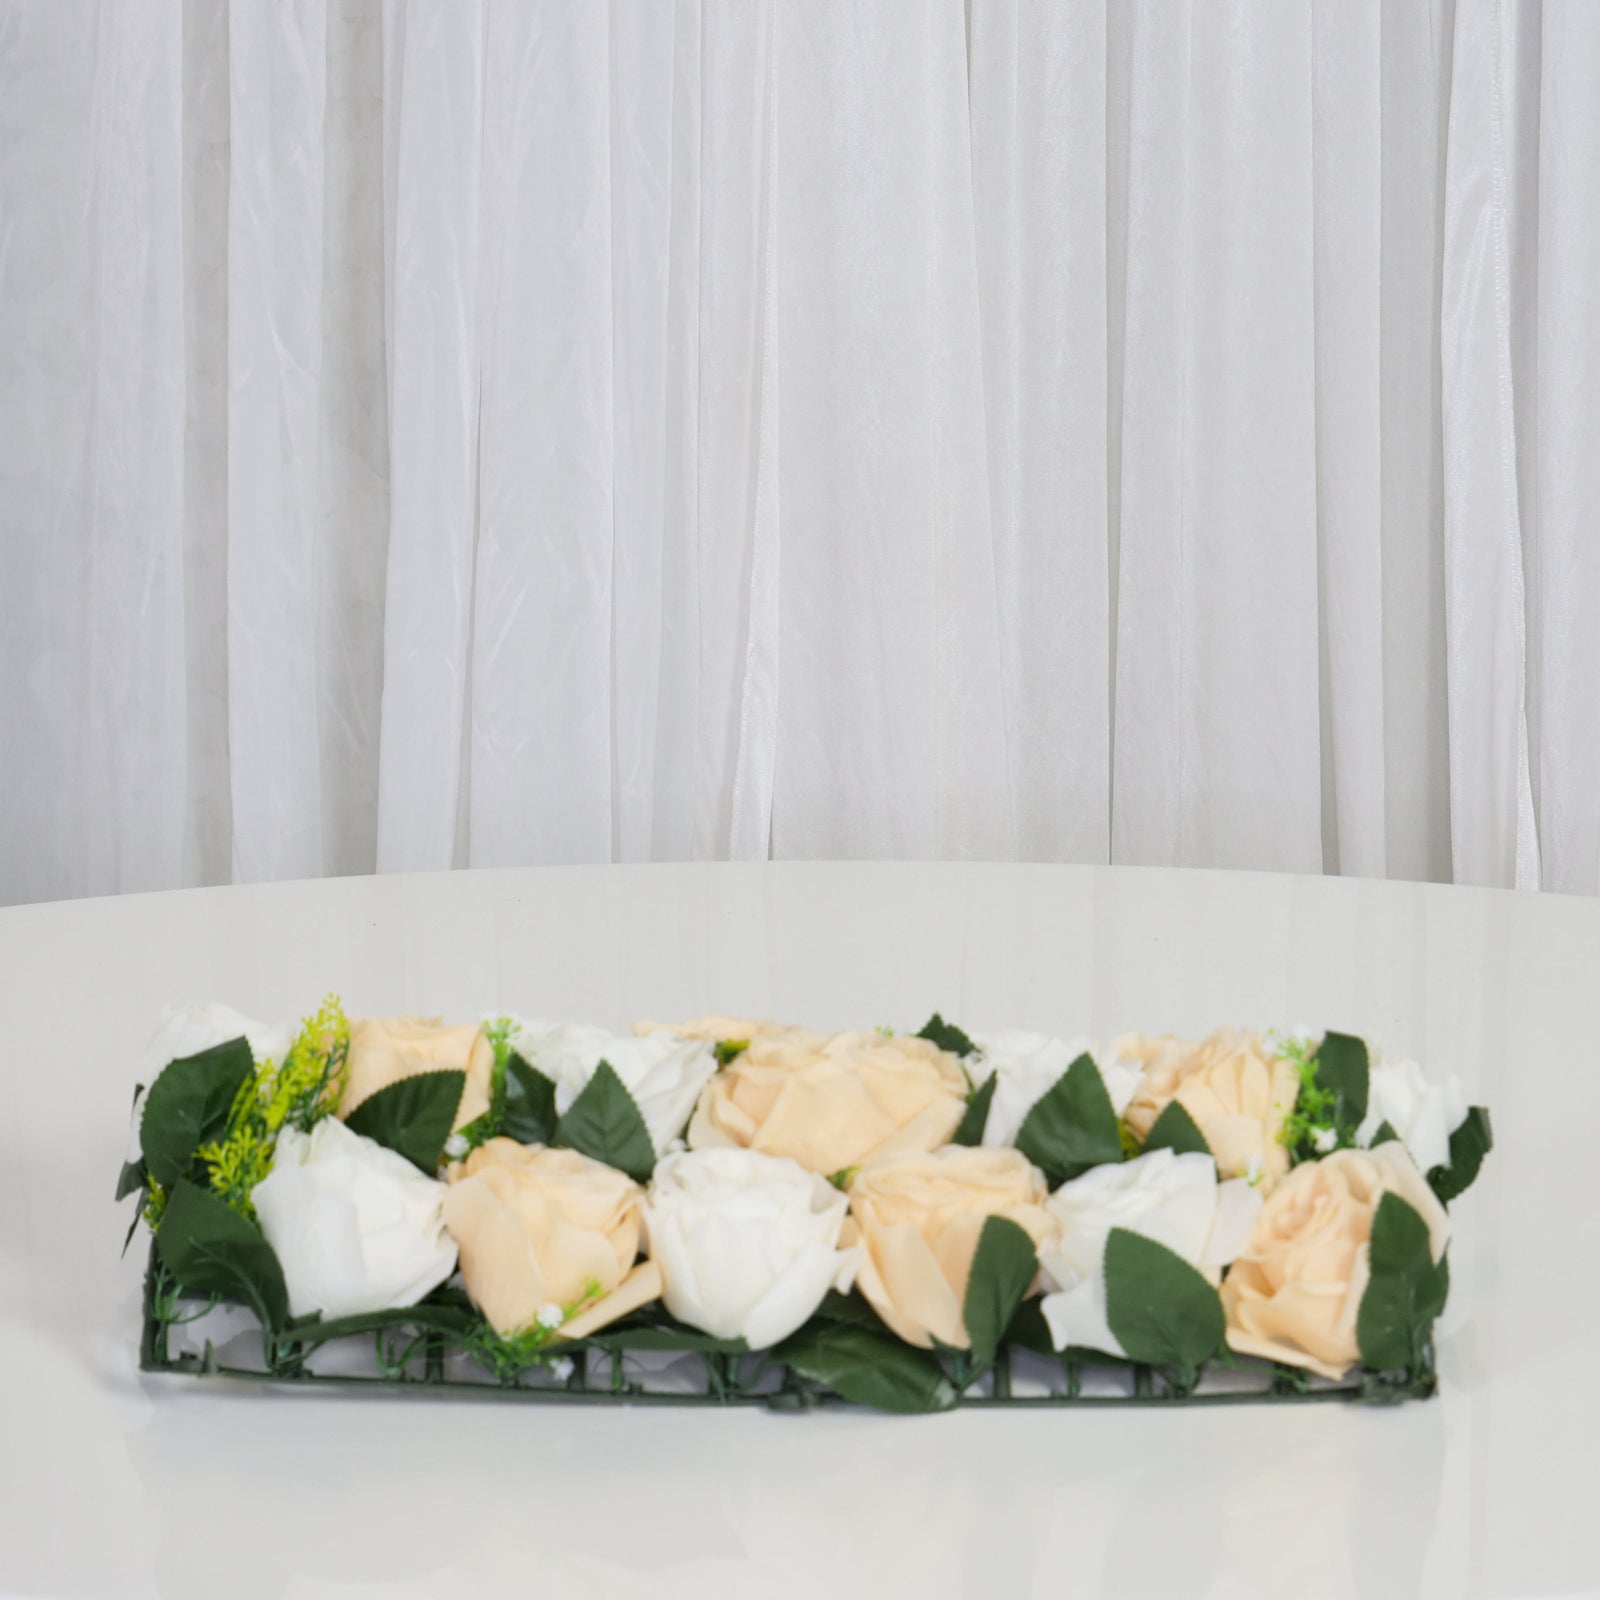 Location - Chemin de table floral rectangulaire 50cm x 25cm - Champagne et blanc